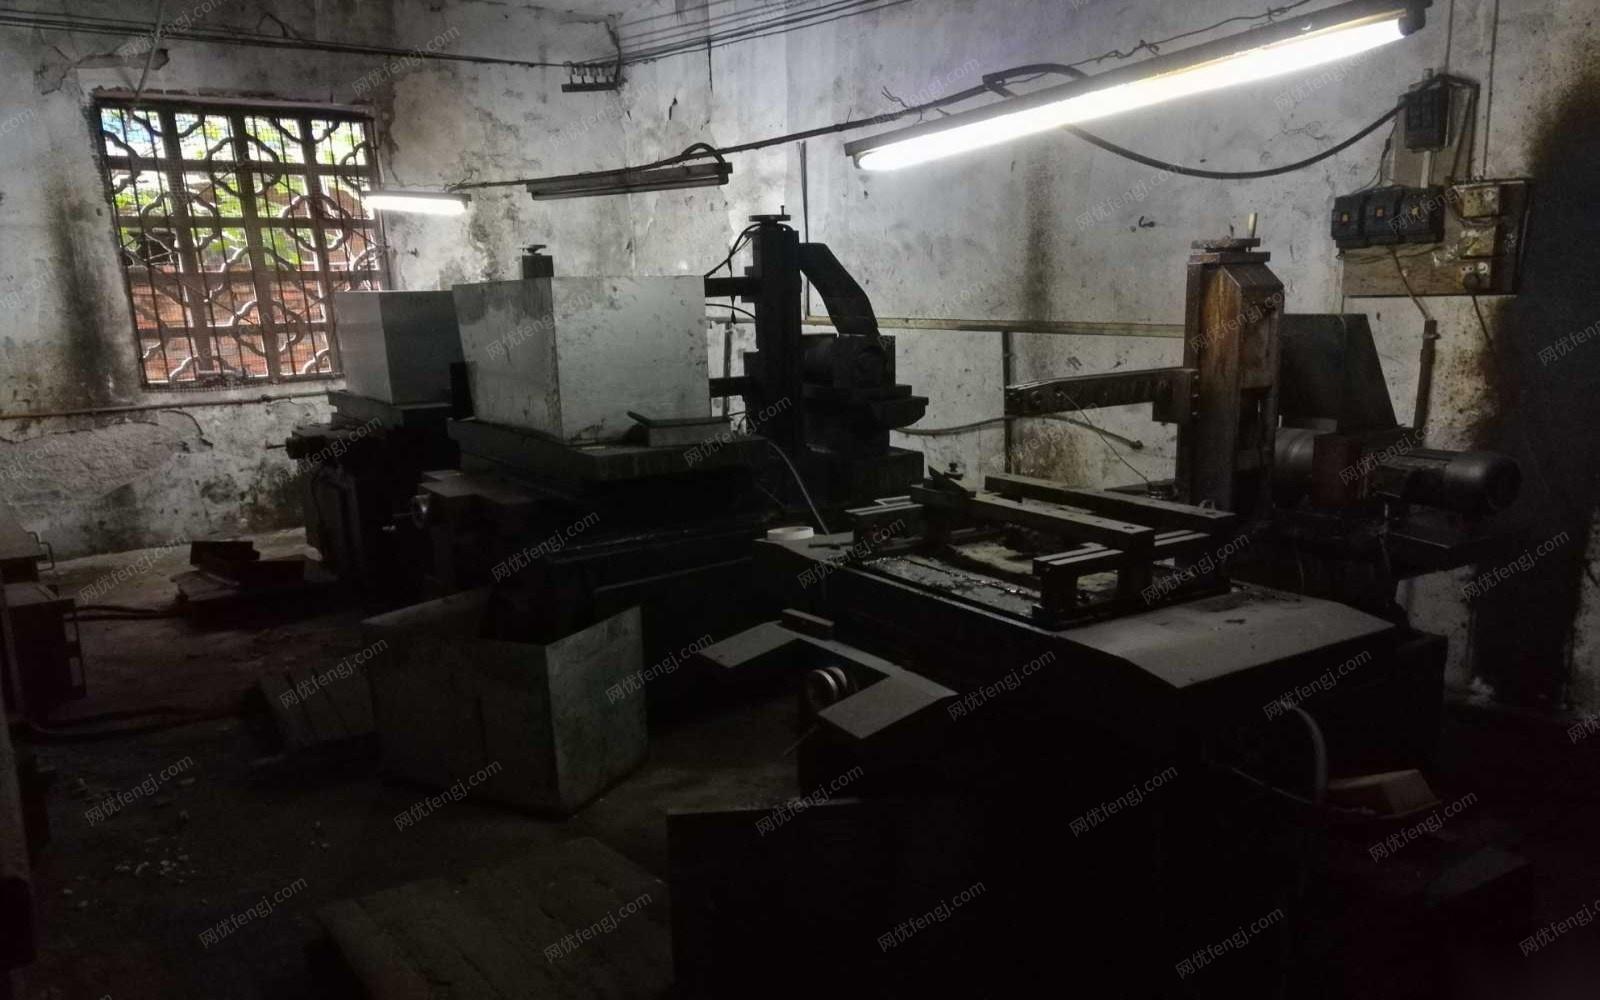 重庆北碚区模具厂拆迁闲置全套模具加工设备及注塑机.吹塑机等辅助设备打包处理